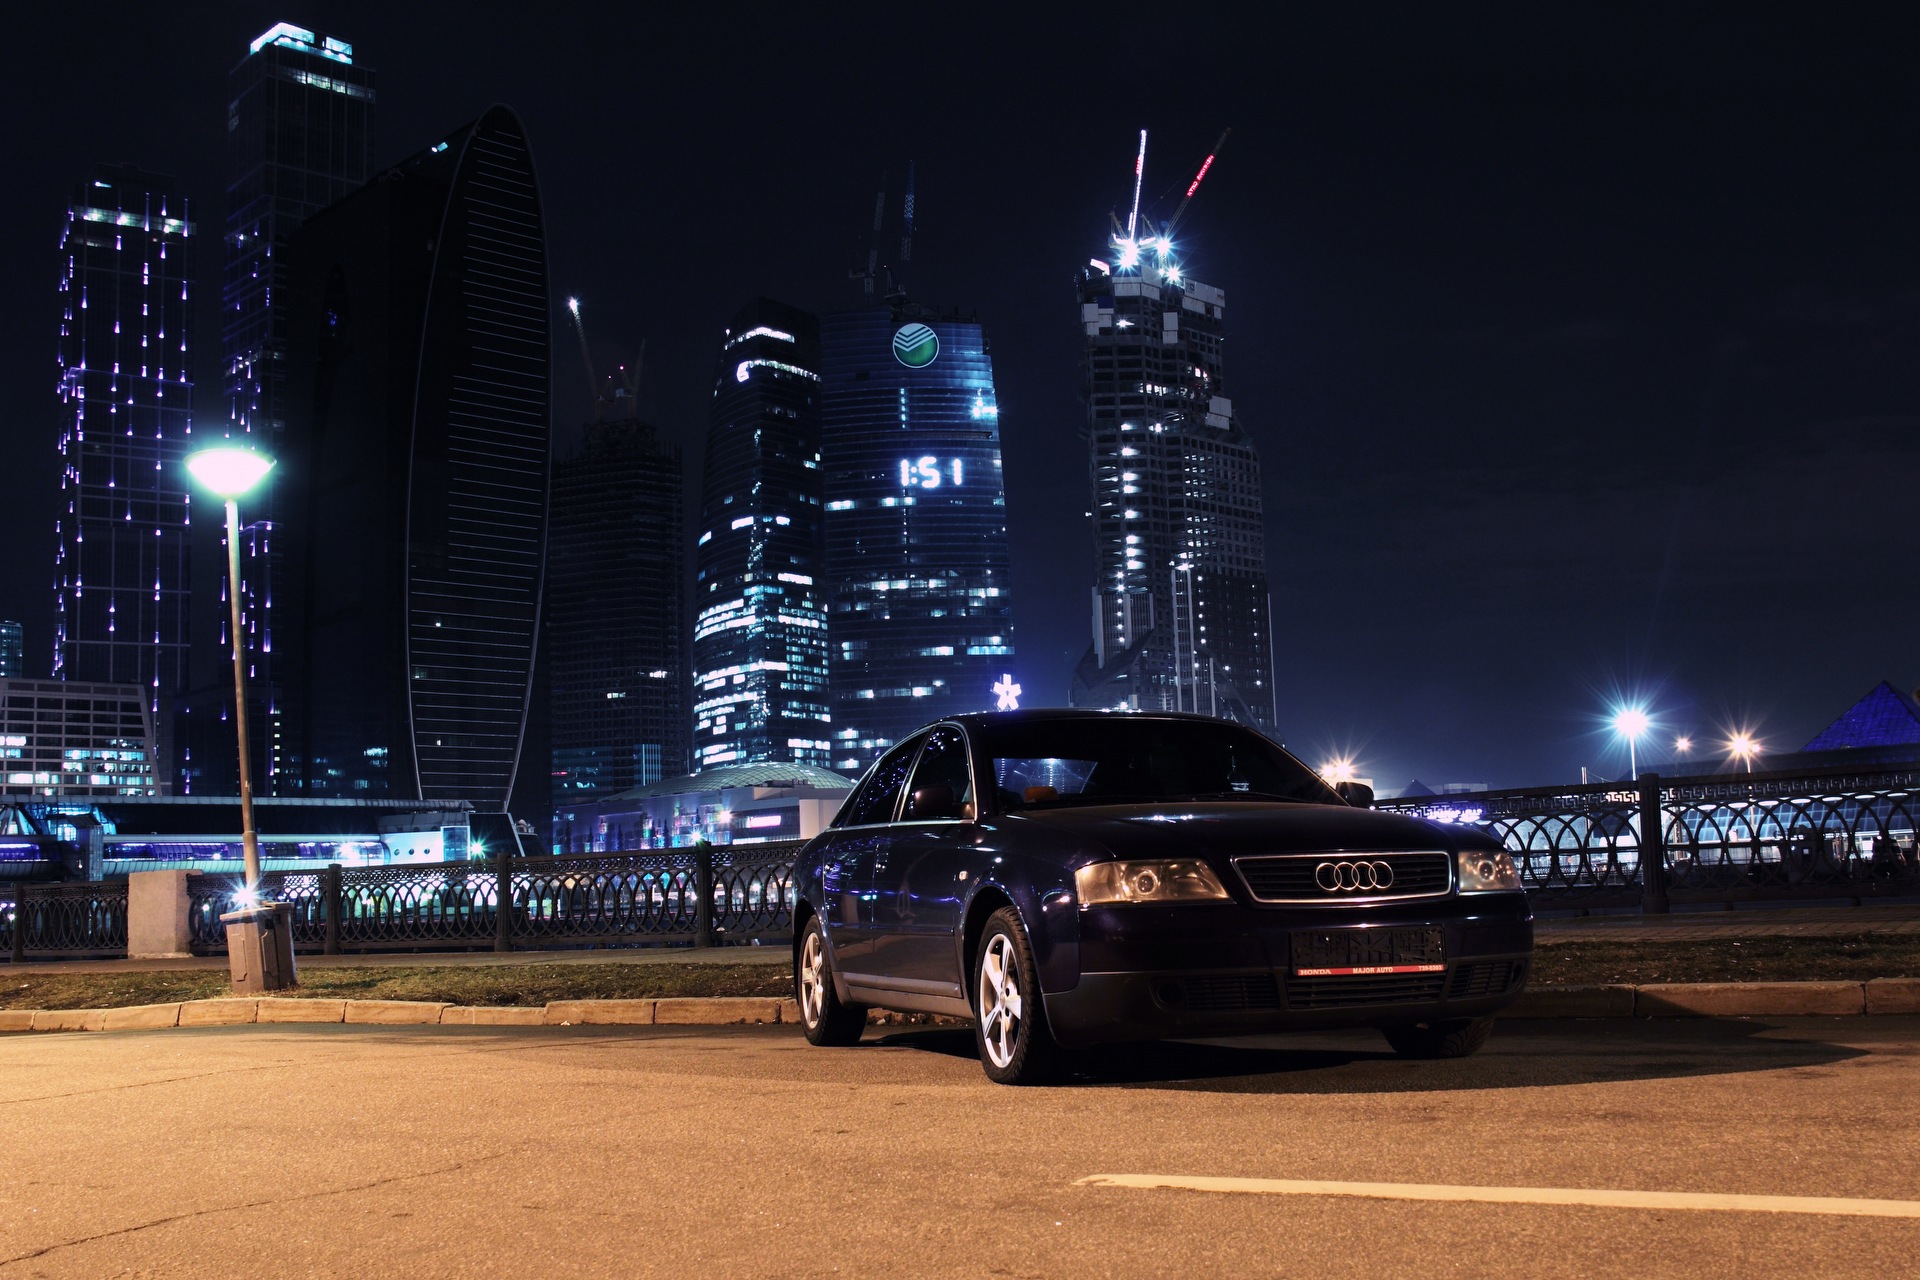 Красивая машина ночью. Приора Москва Сити. БМВ g11 ночью. BMW m5 e39 в ночной Москве. БМВ Москва Сити.